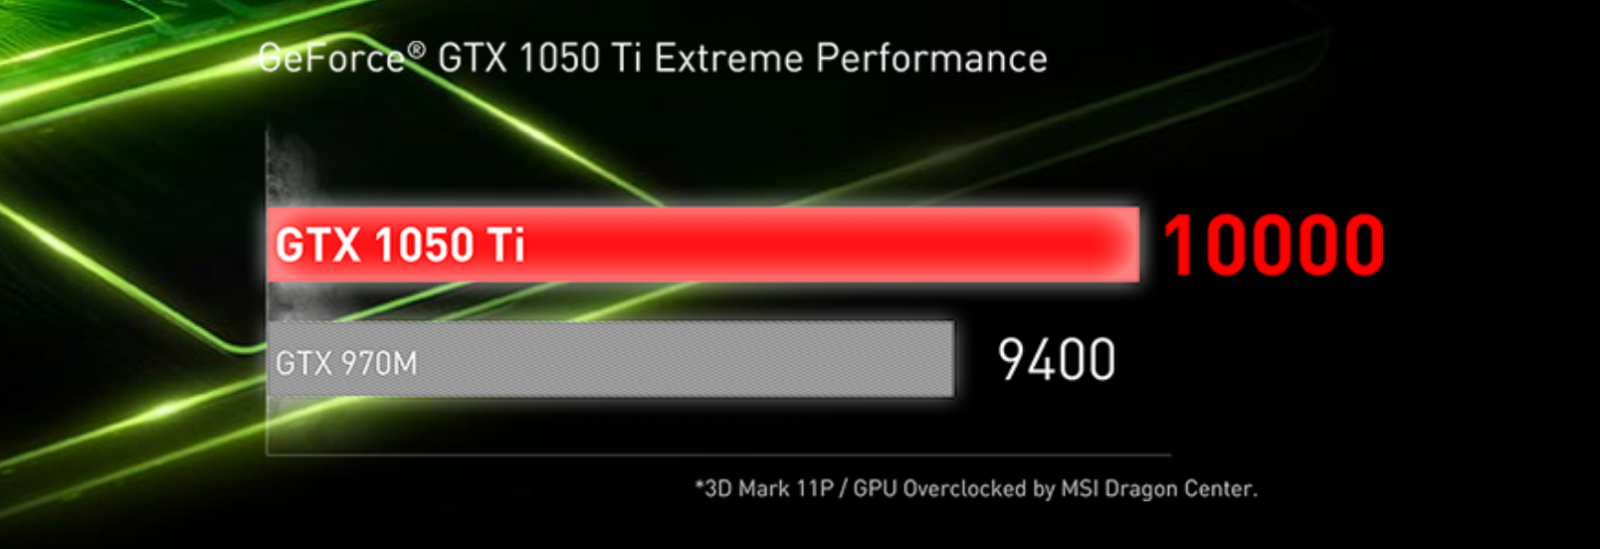 график производительности видеокарты GTX 1050Ti по сравнению с GTX 970M